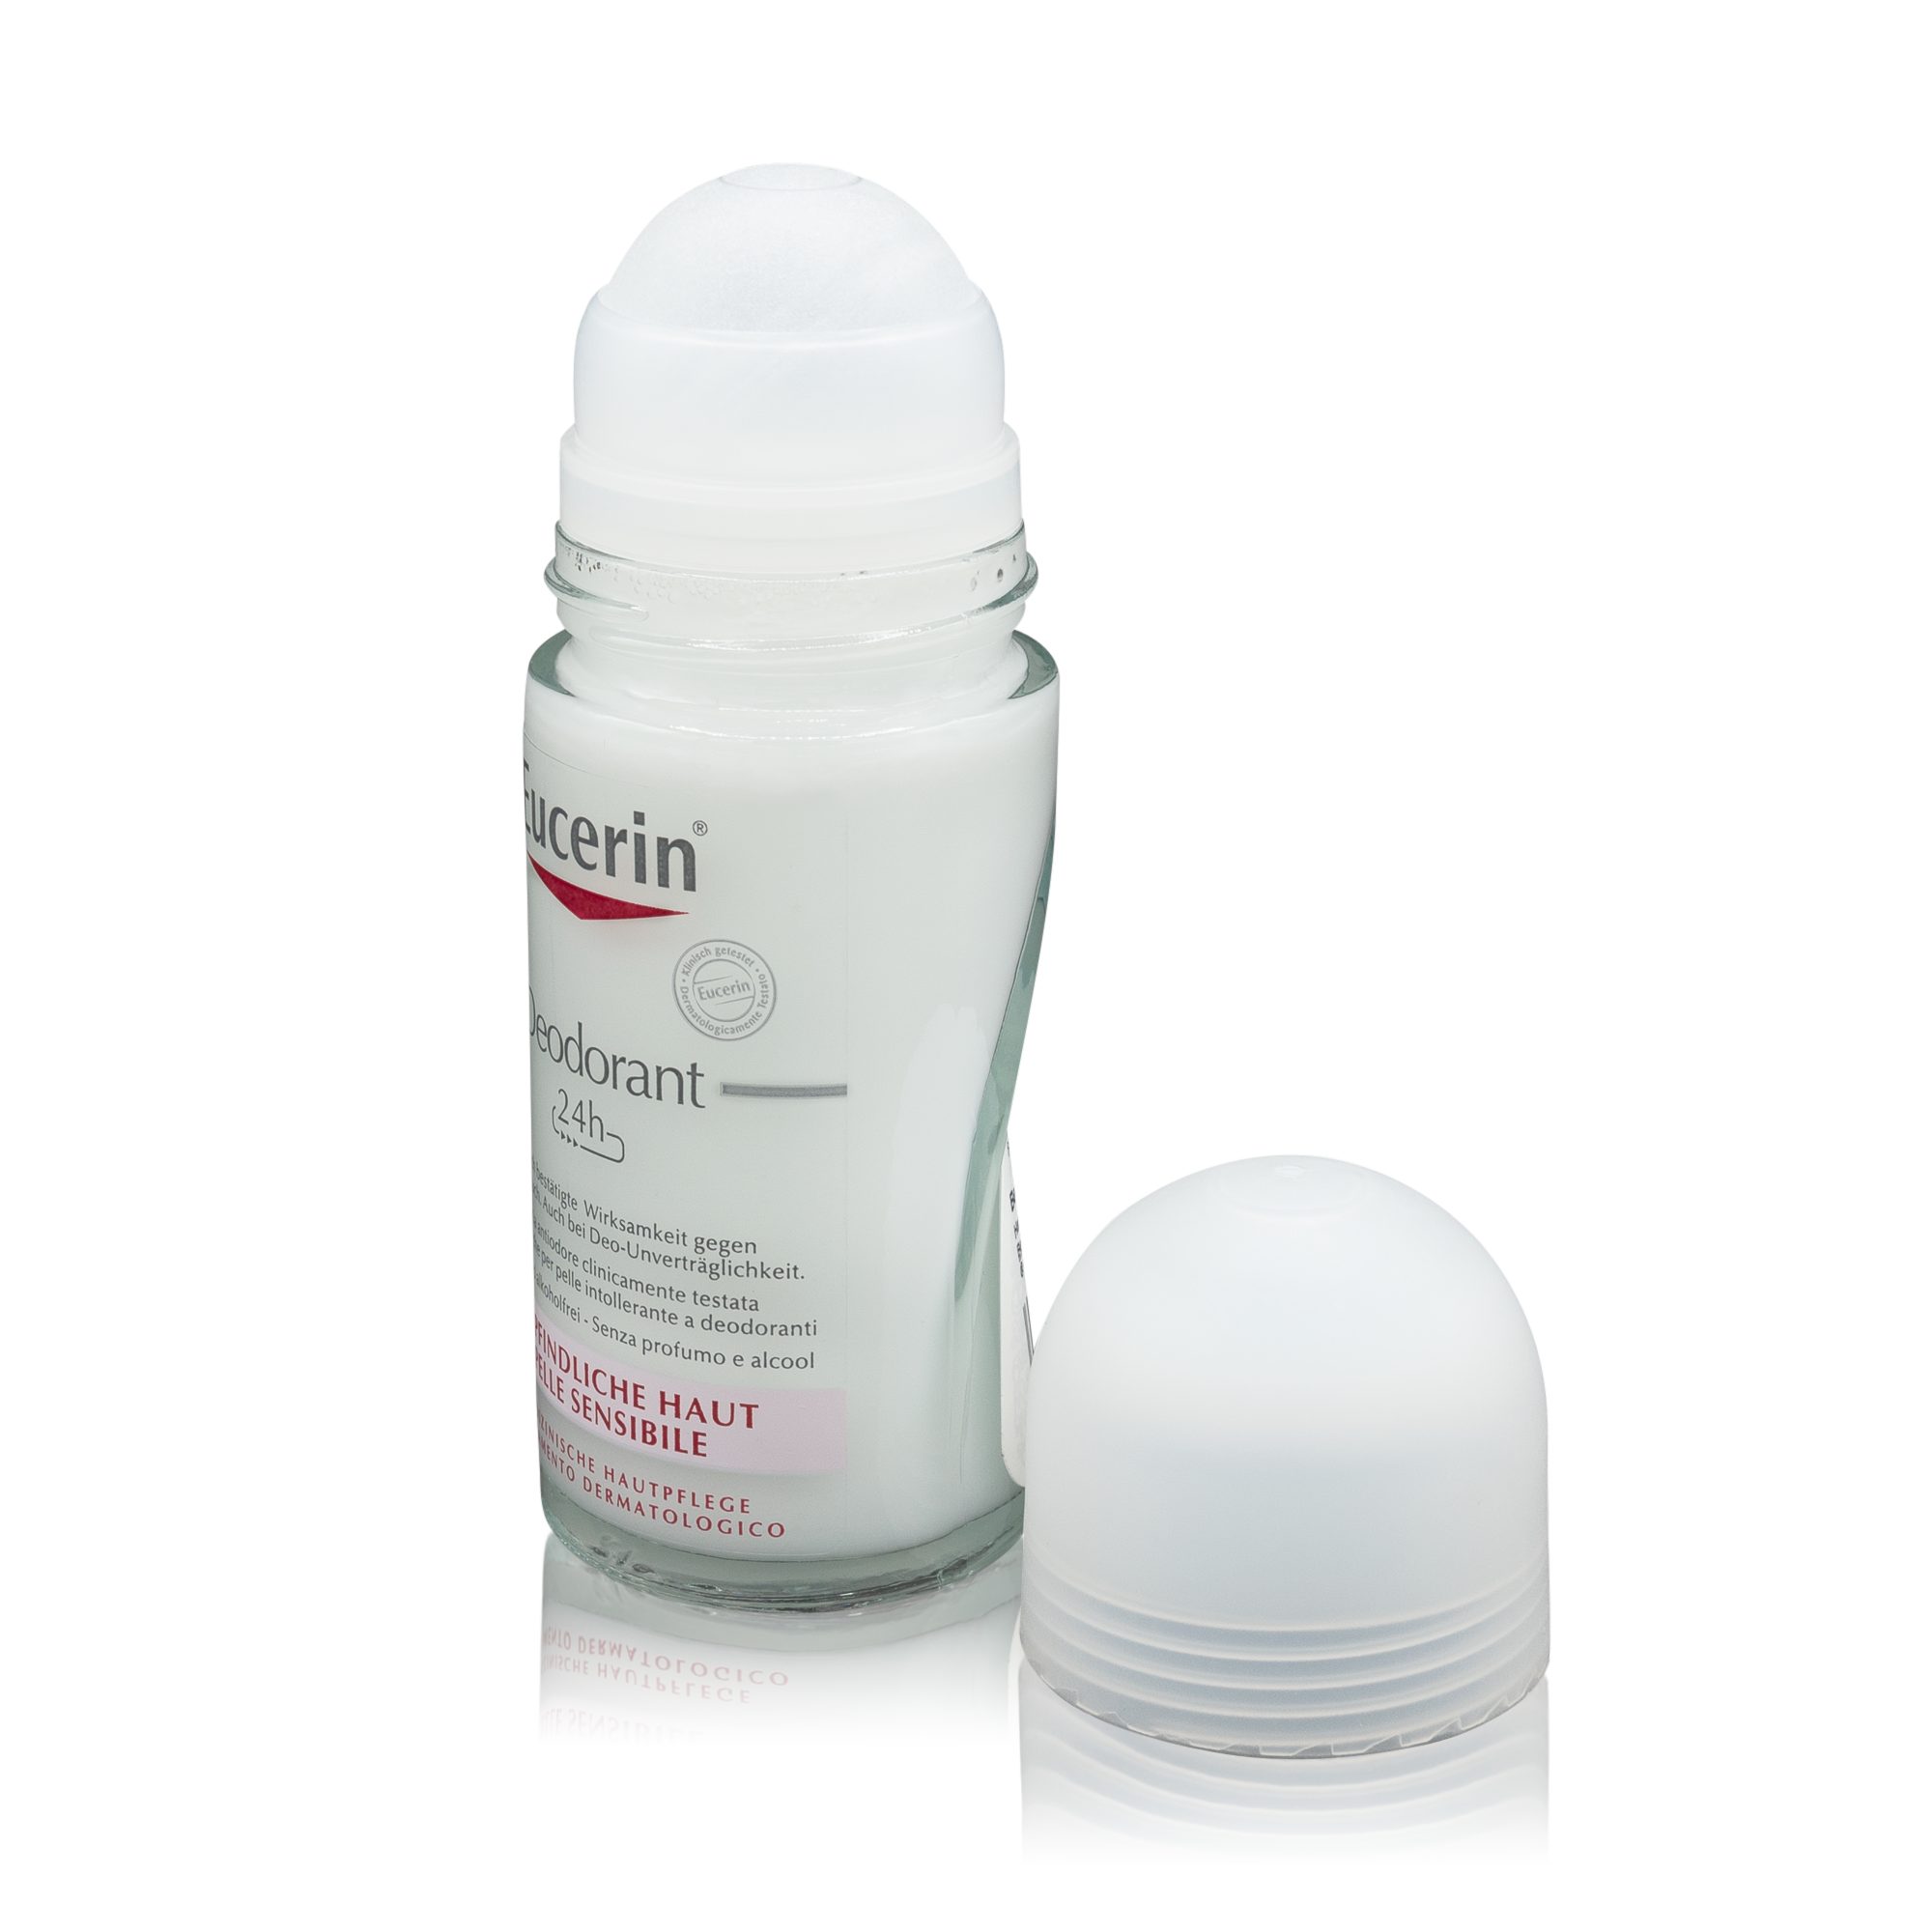 Schutz Roll-On, bei gegen Schweißgeruch. empfindlicher Deodorant - Ein Eucerin Haut Eucerin zuverlässiger Deo-Roller 24h